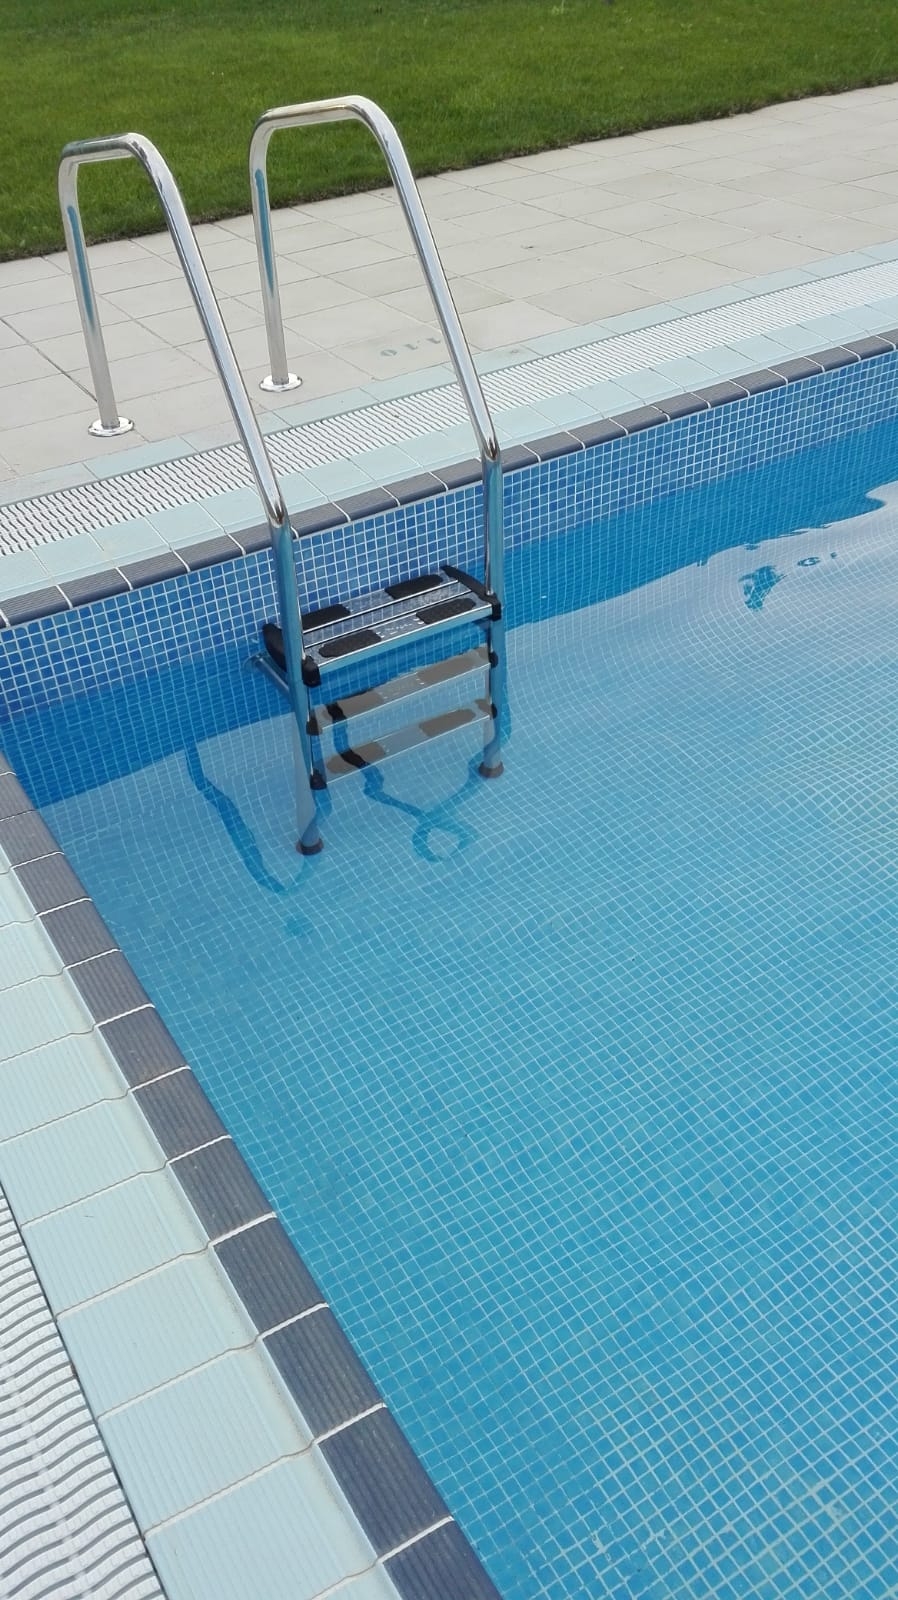 Els usuaris trobaran una piscina amb molts elements renovats